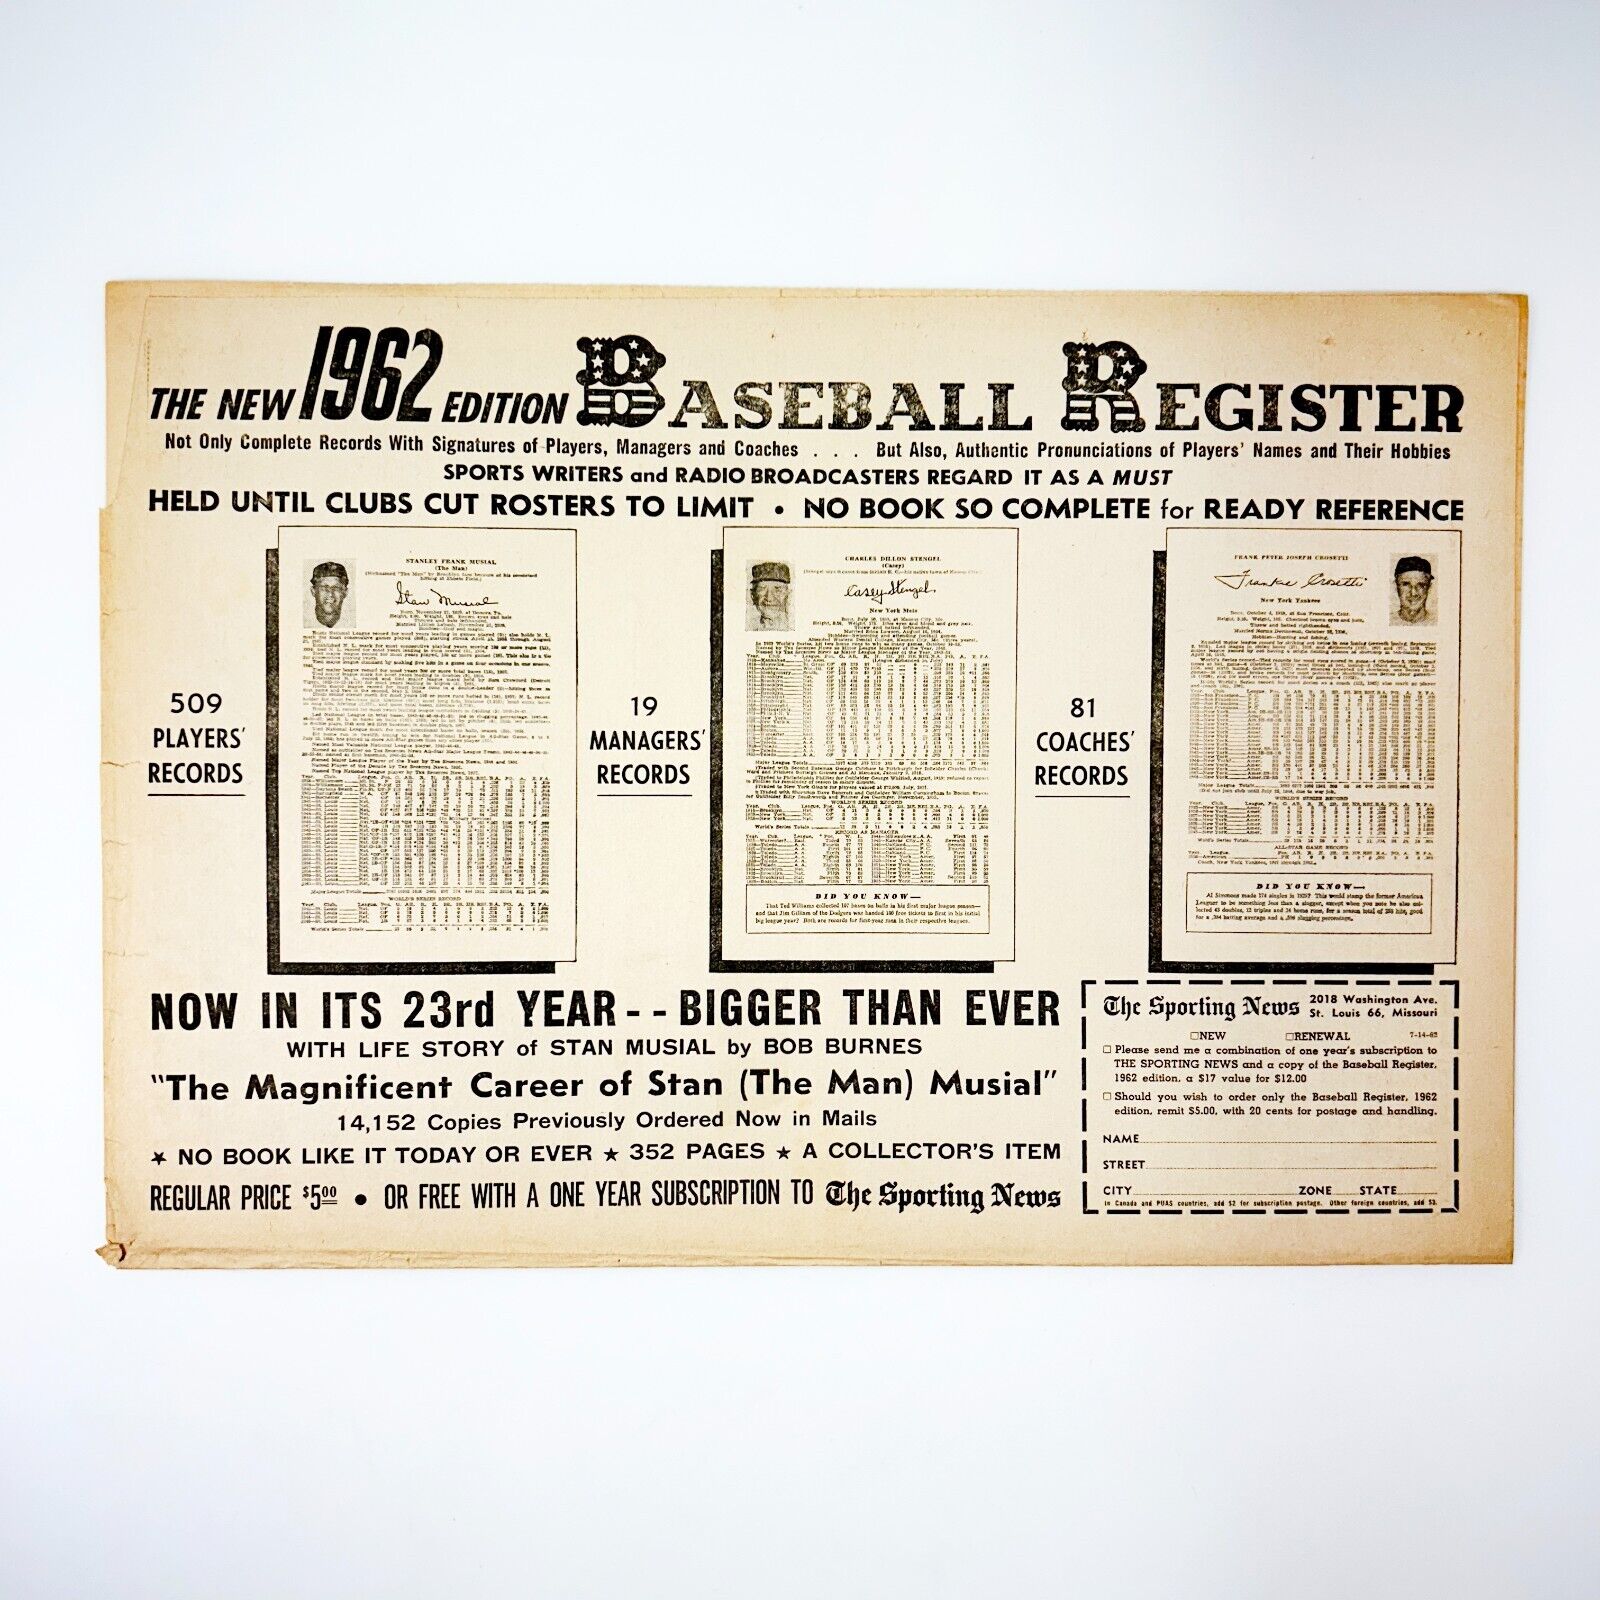 Stan Musial Casey Stengel Frank Crosetti 1962 Baseball Register Advertisement